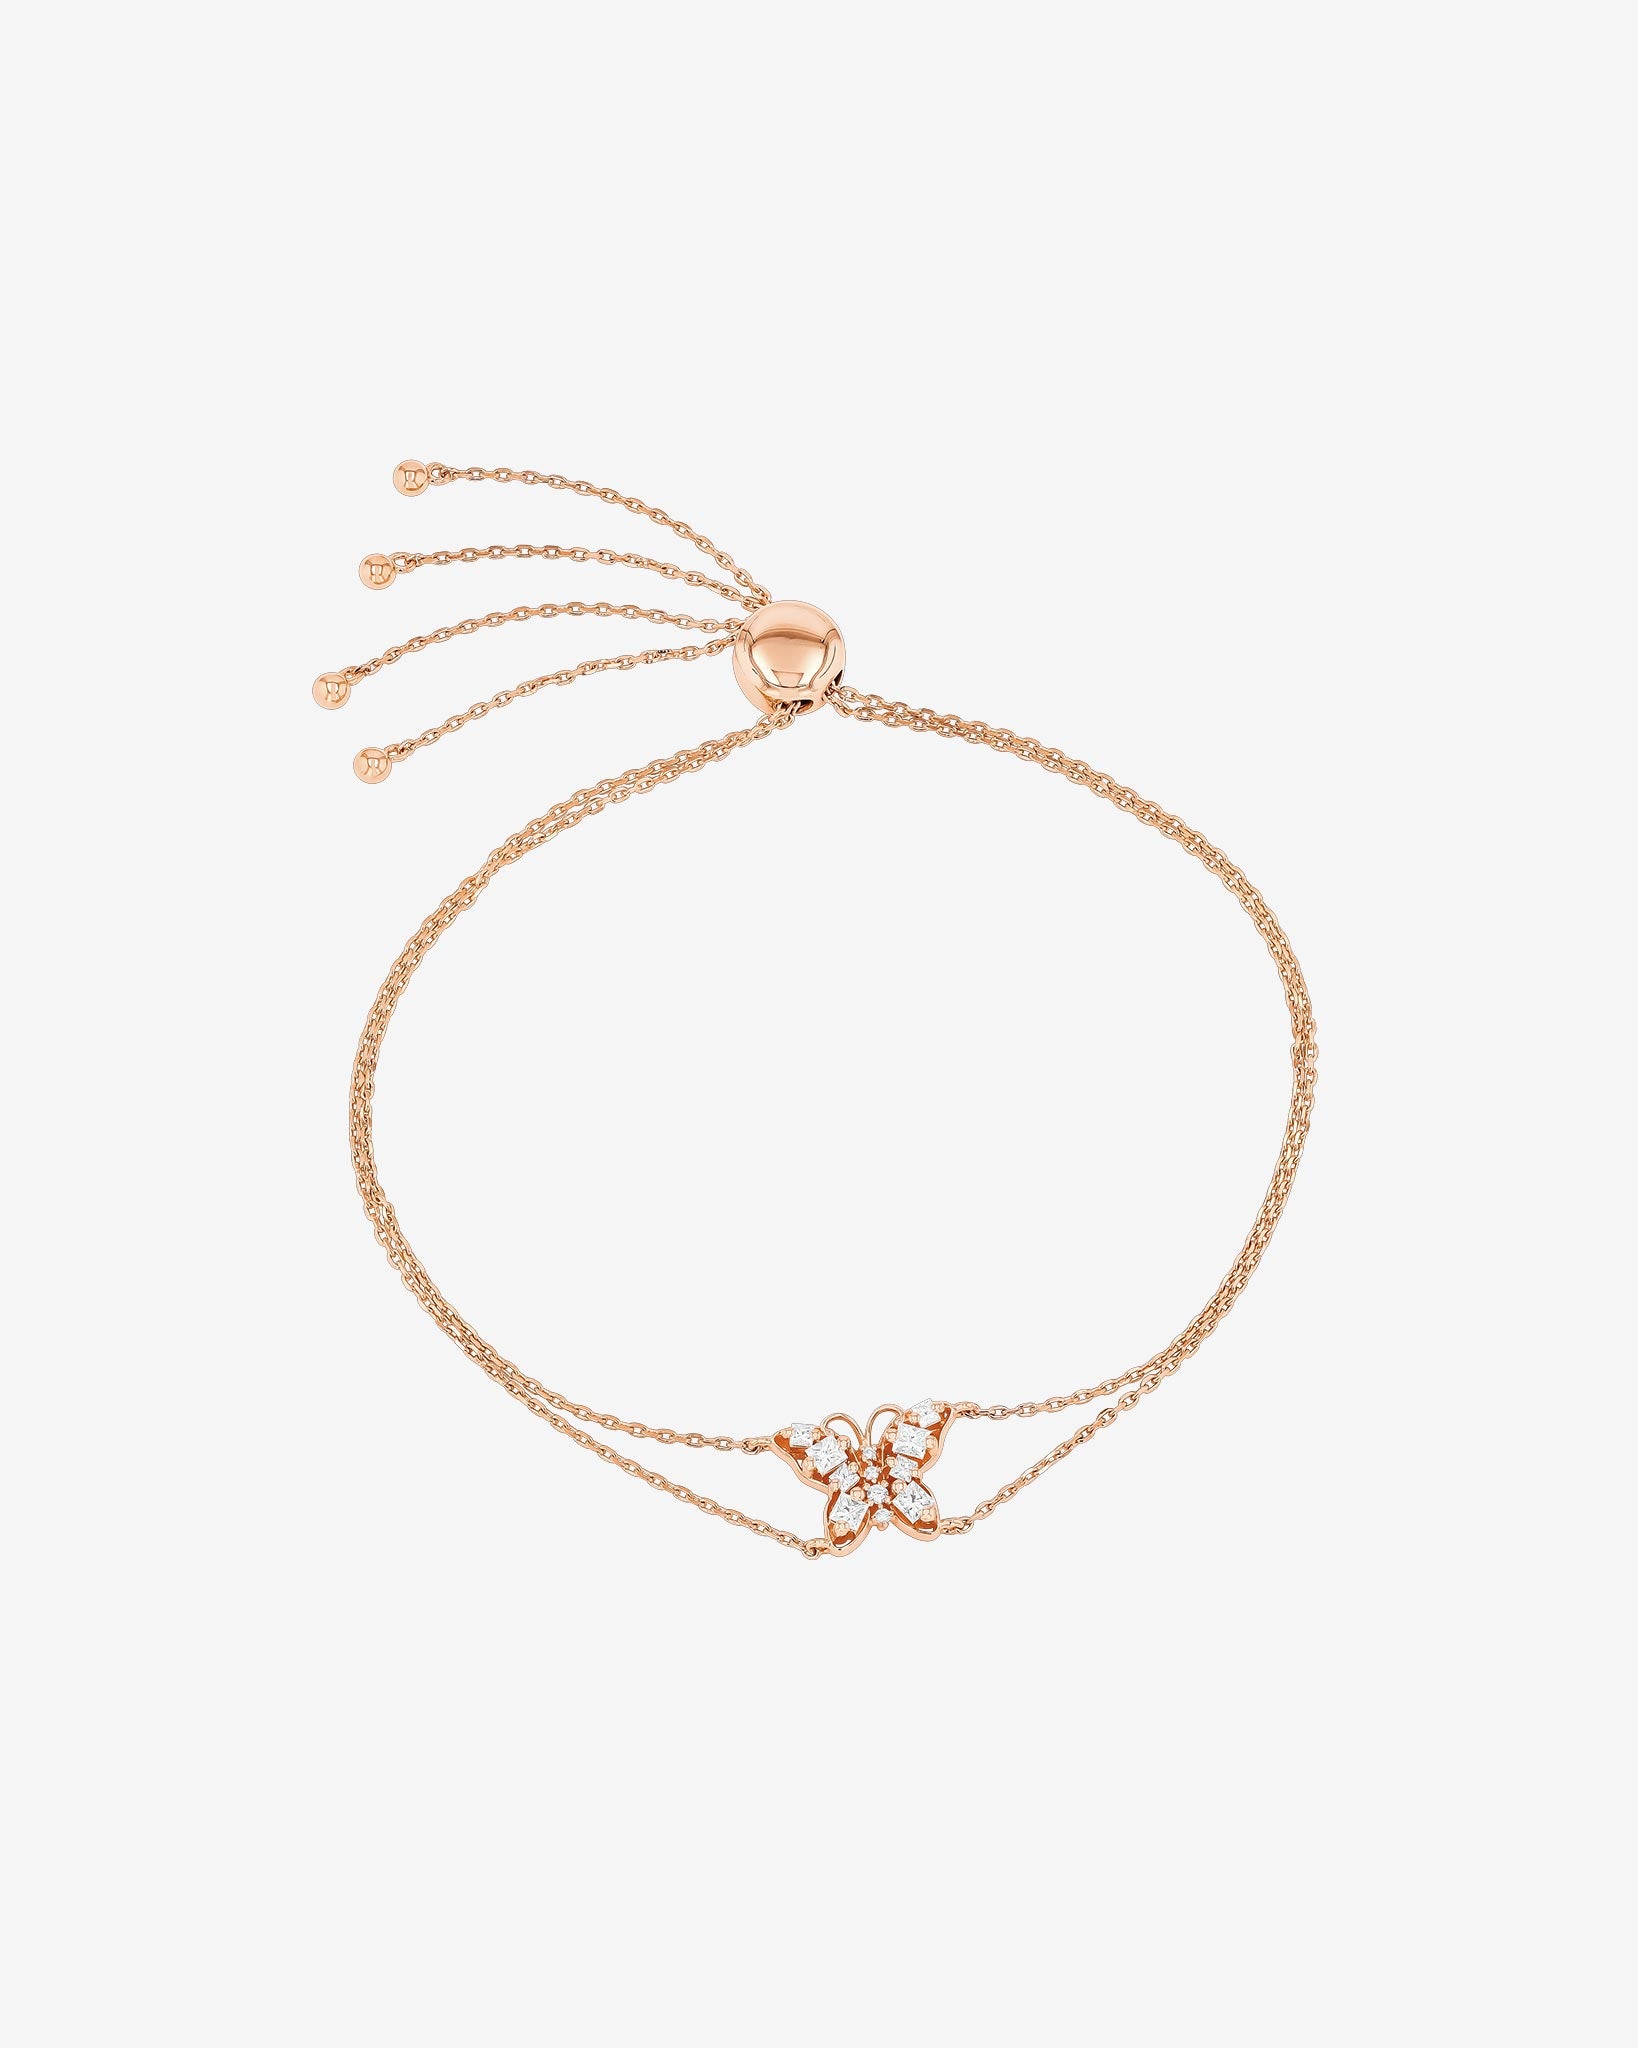 Suzanne Kalan Princess Diamond Mini Butterfly Pulley Bracelet in 18k rose gold